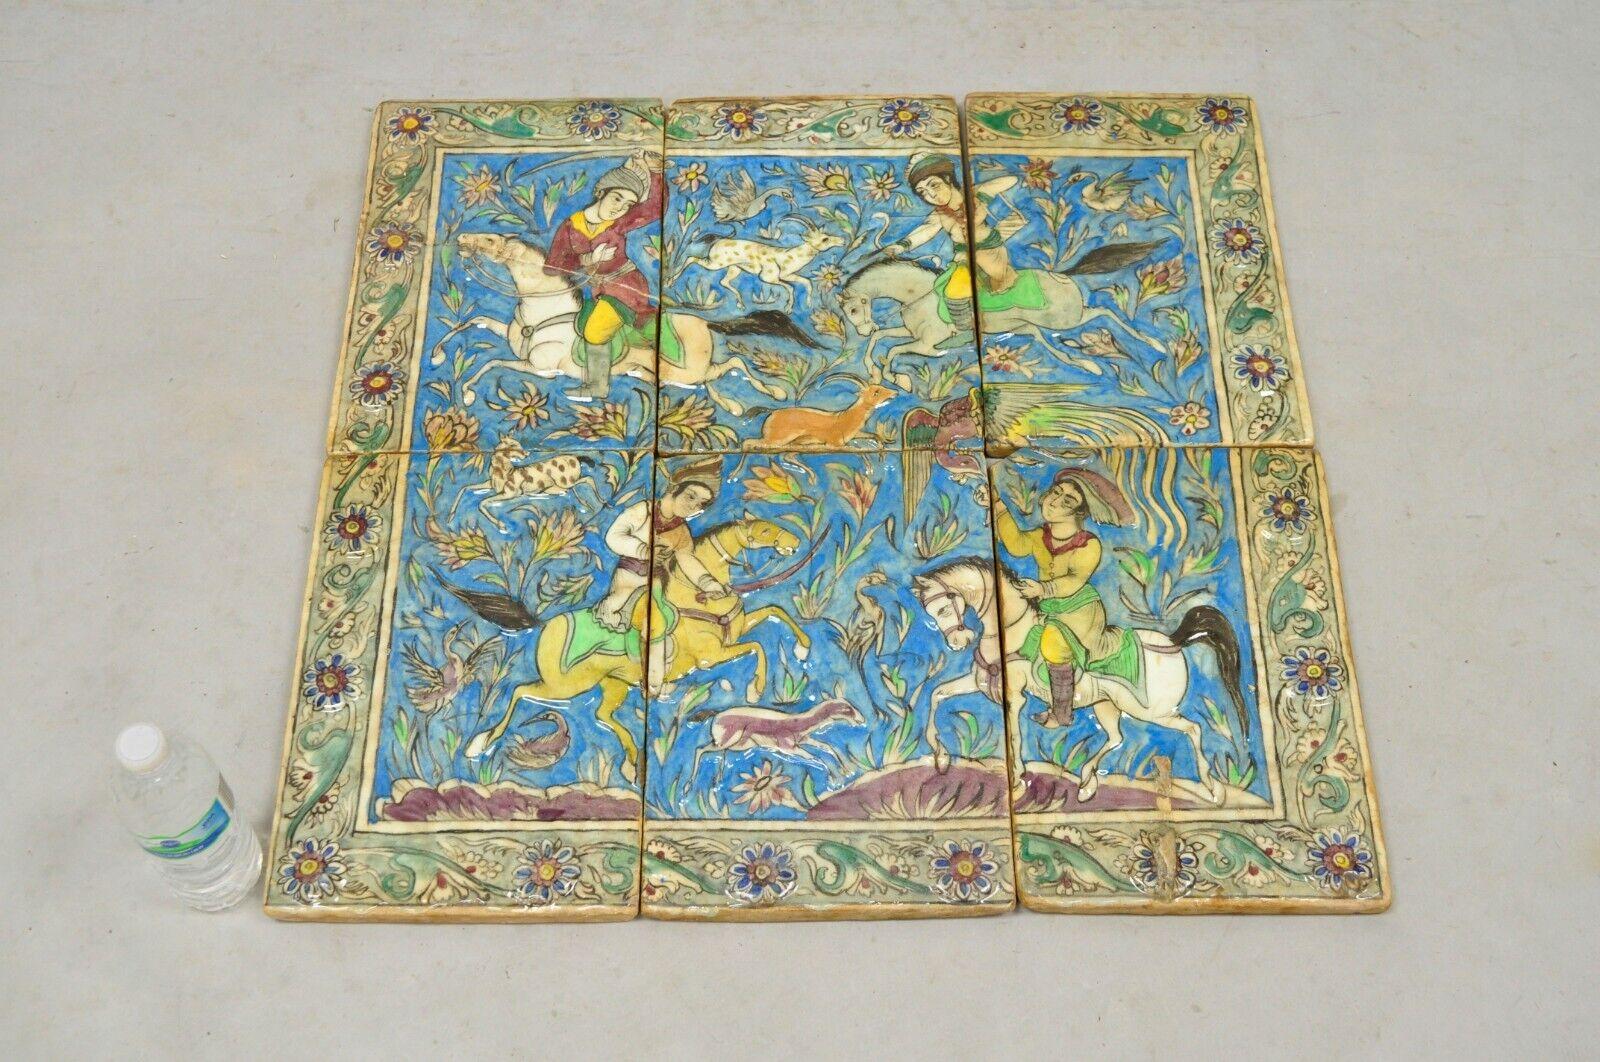 Antike persische Iznik Qajar Stil Keramik Fliese Mosaik Jagd Szene 6 Stück Set (C7). Die Szene besteht aus 4 Reitern mit verschiedenen Tieren und Vögeln. Der Artikel zeichnet sich durch eine originale Craquelé-Glasur, eine schwere